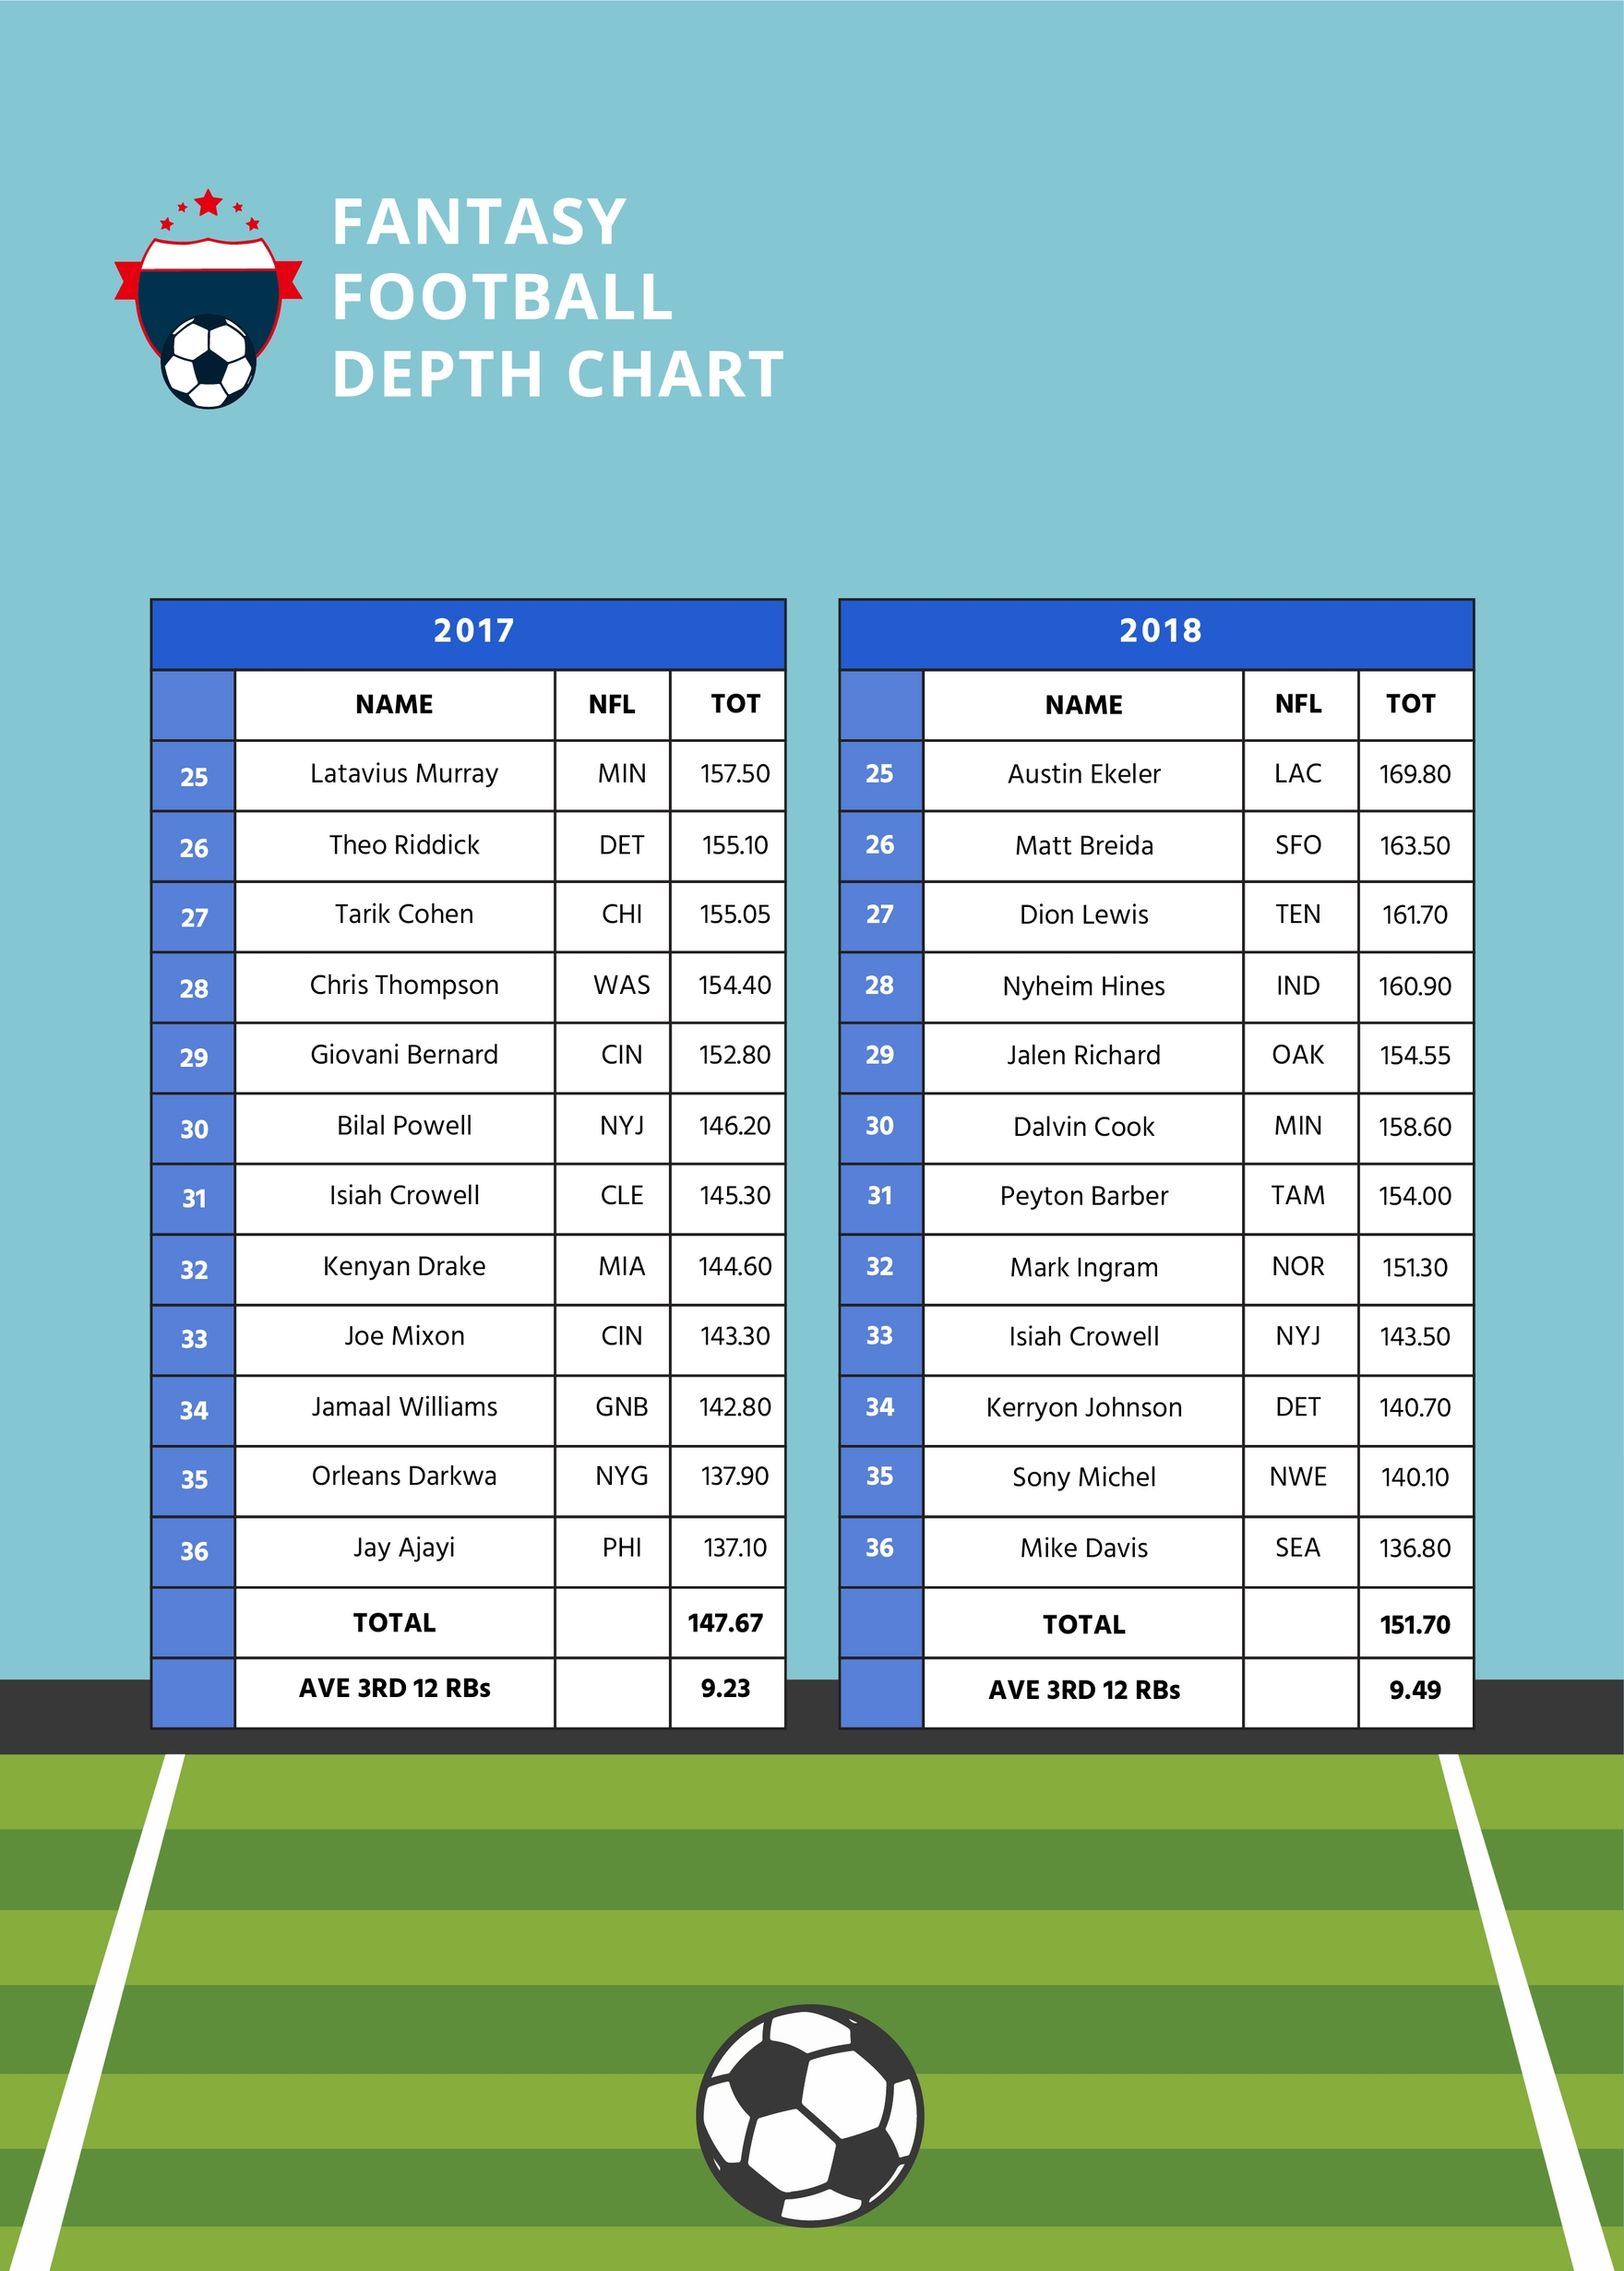 Fantasy Football Depth Chart in PDF, Illustrator